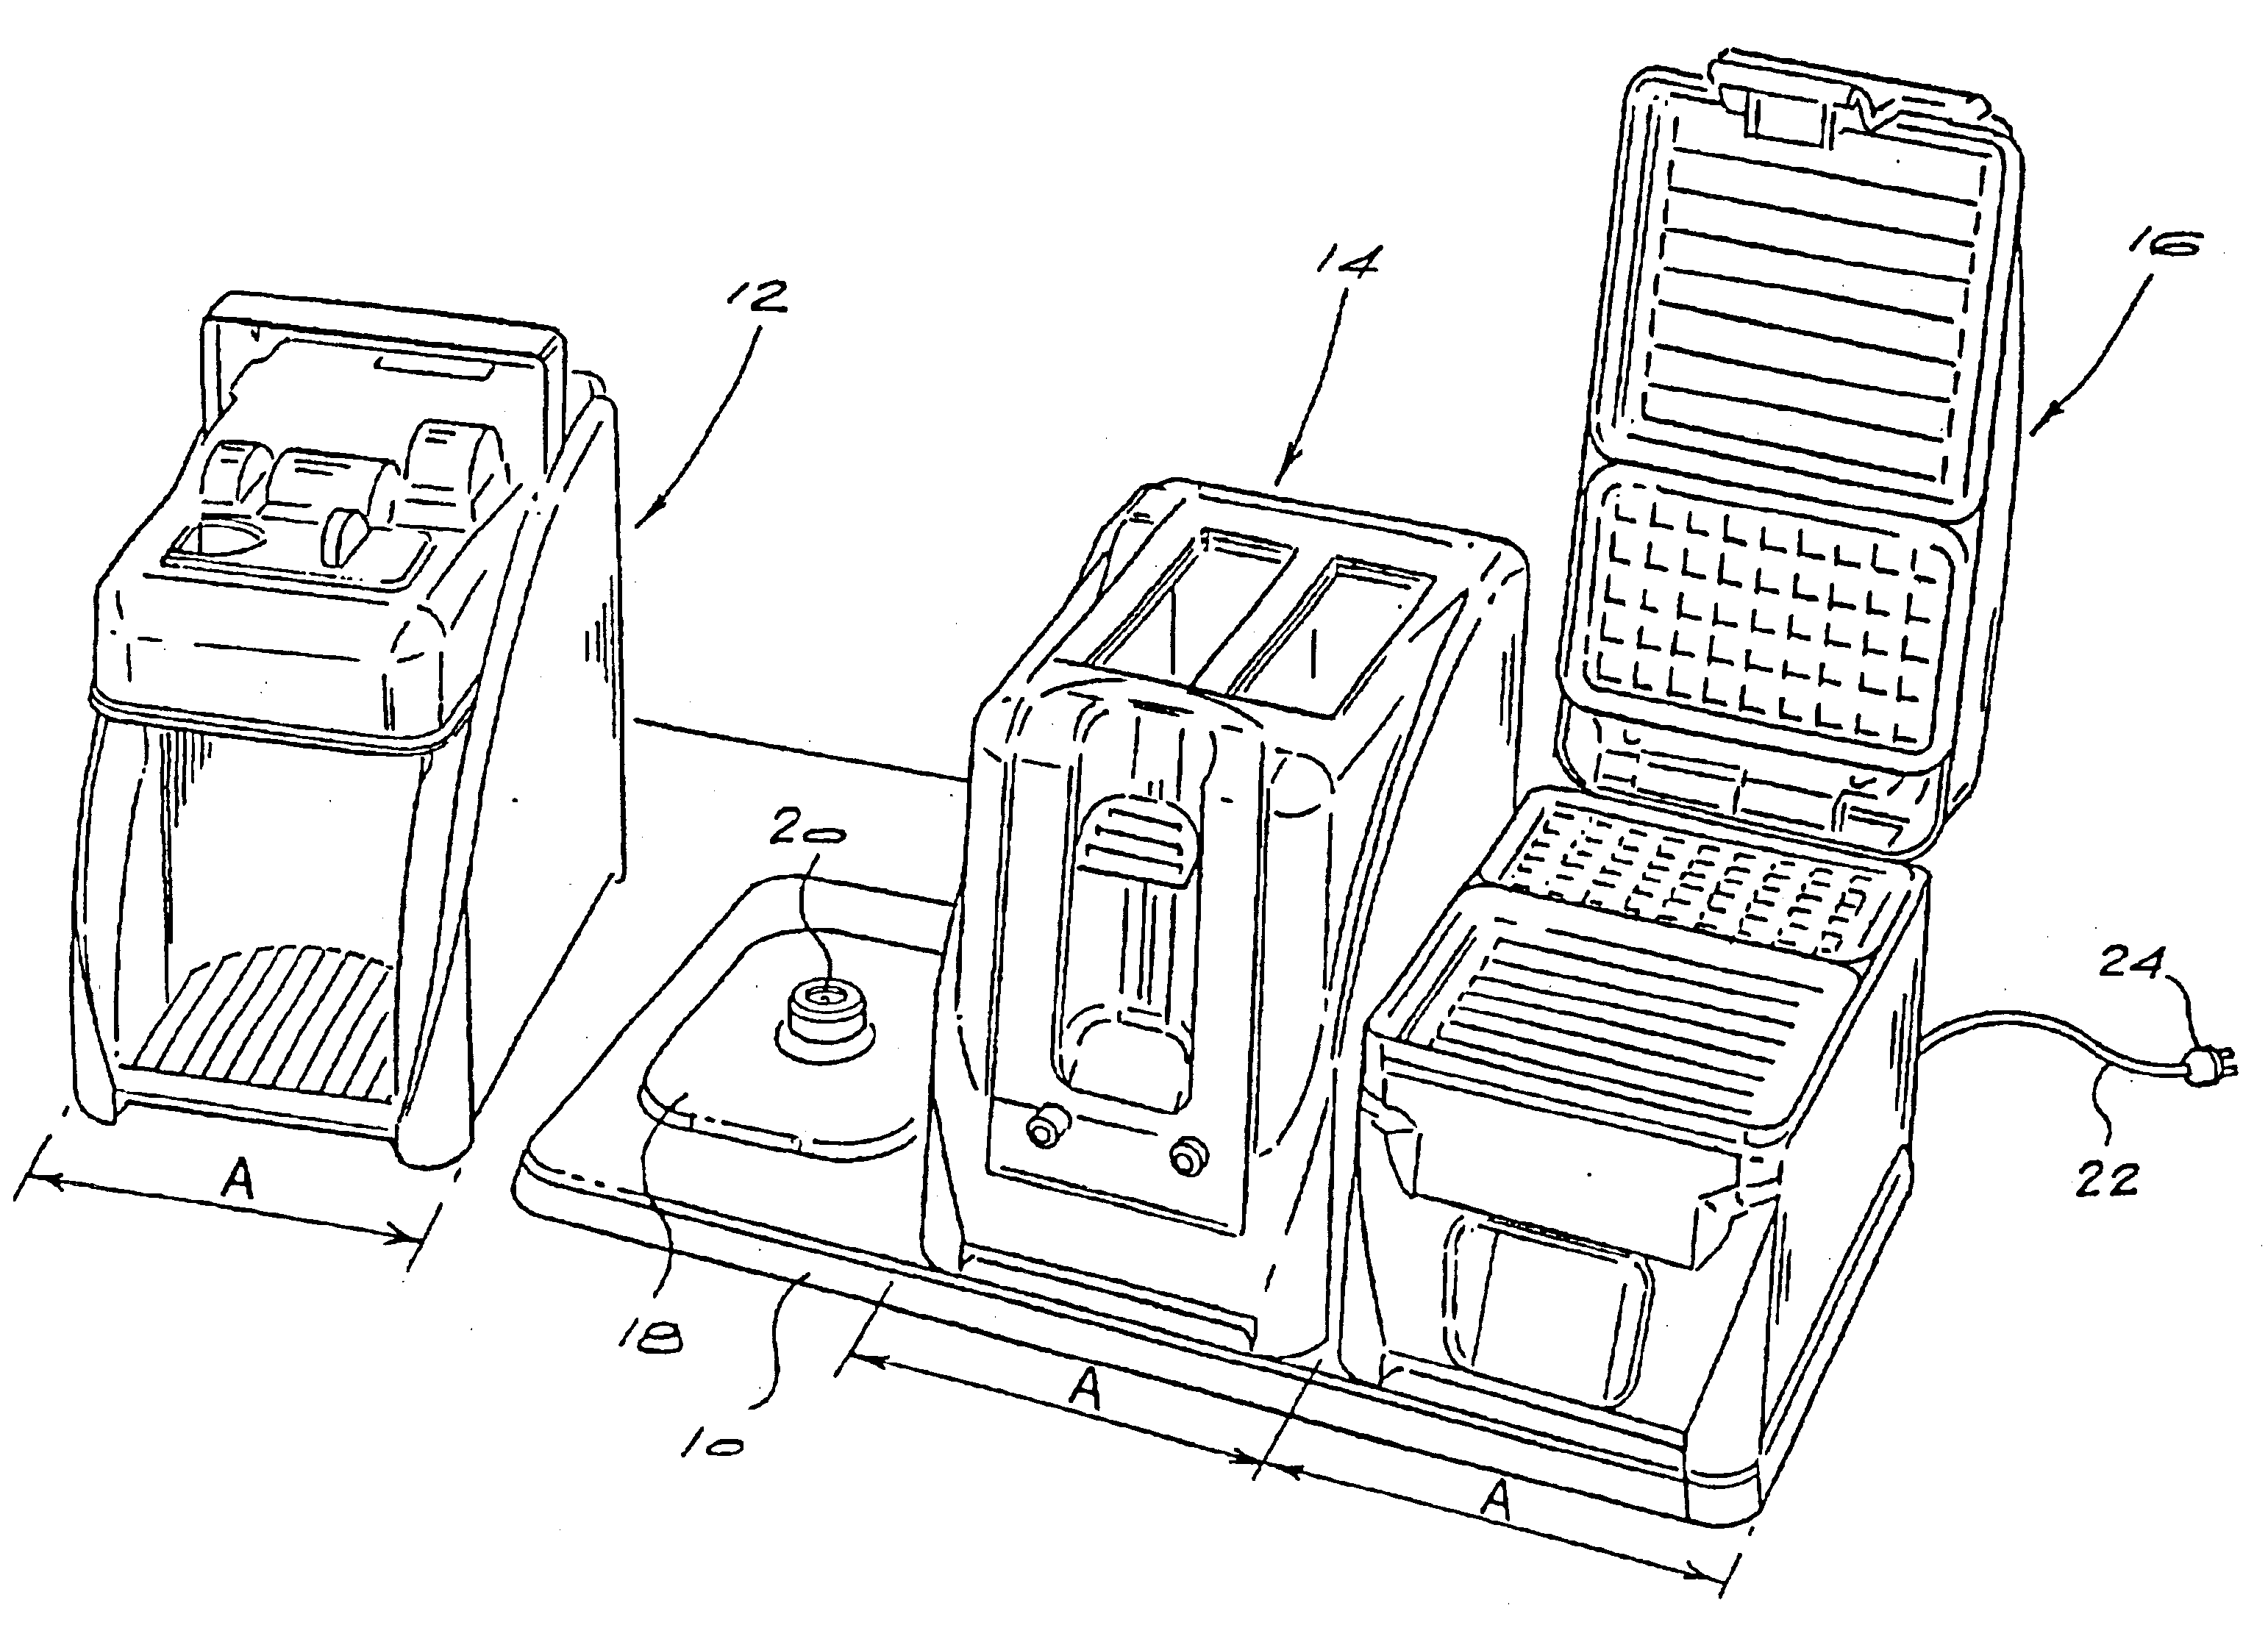 Modular appliance